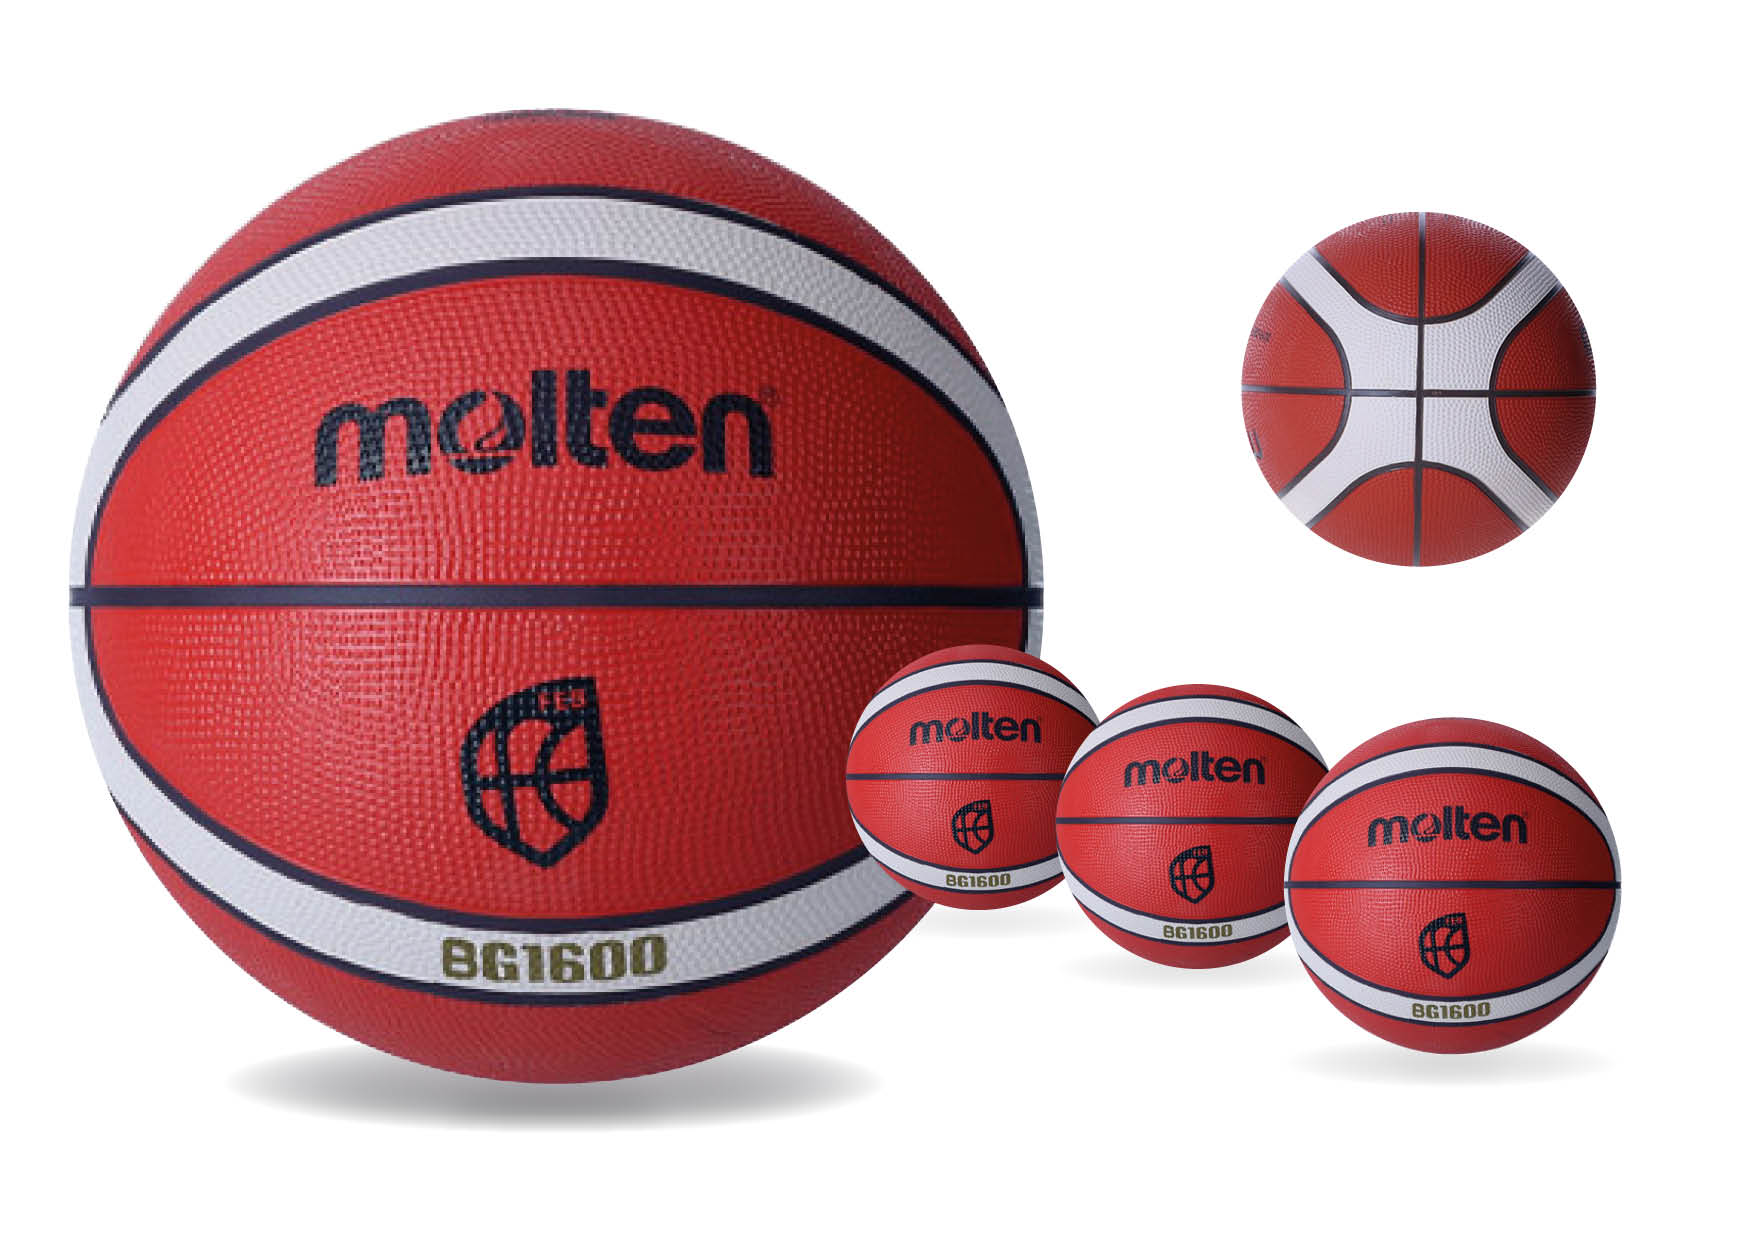 Balon Baloncesto Molten bg 1600 - SERVICIOS INTEGRALES GUI AN .